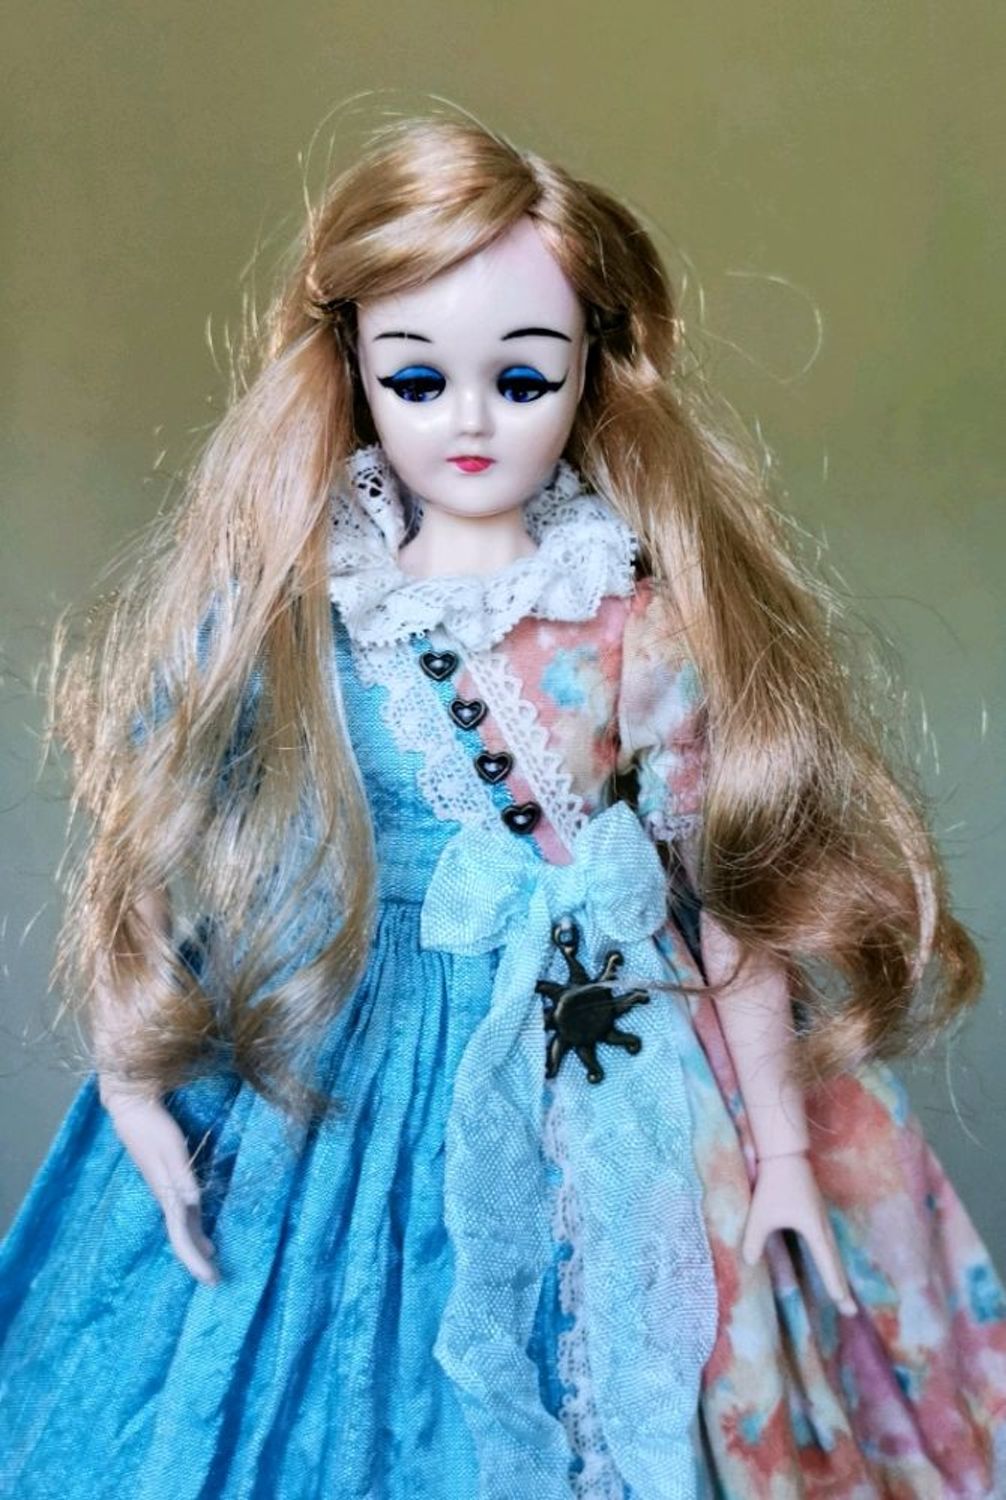 Фото №2 к отзыву покупателя Екатерина Филиппова FancyTeddies о товаре Платье для кукол Блайз, одежда для кукол. Blythe dress